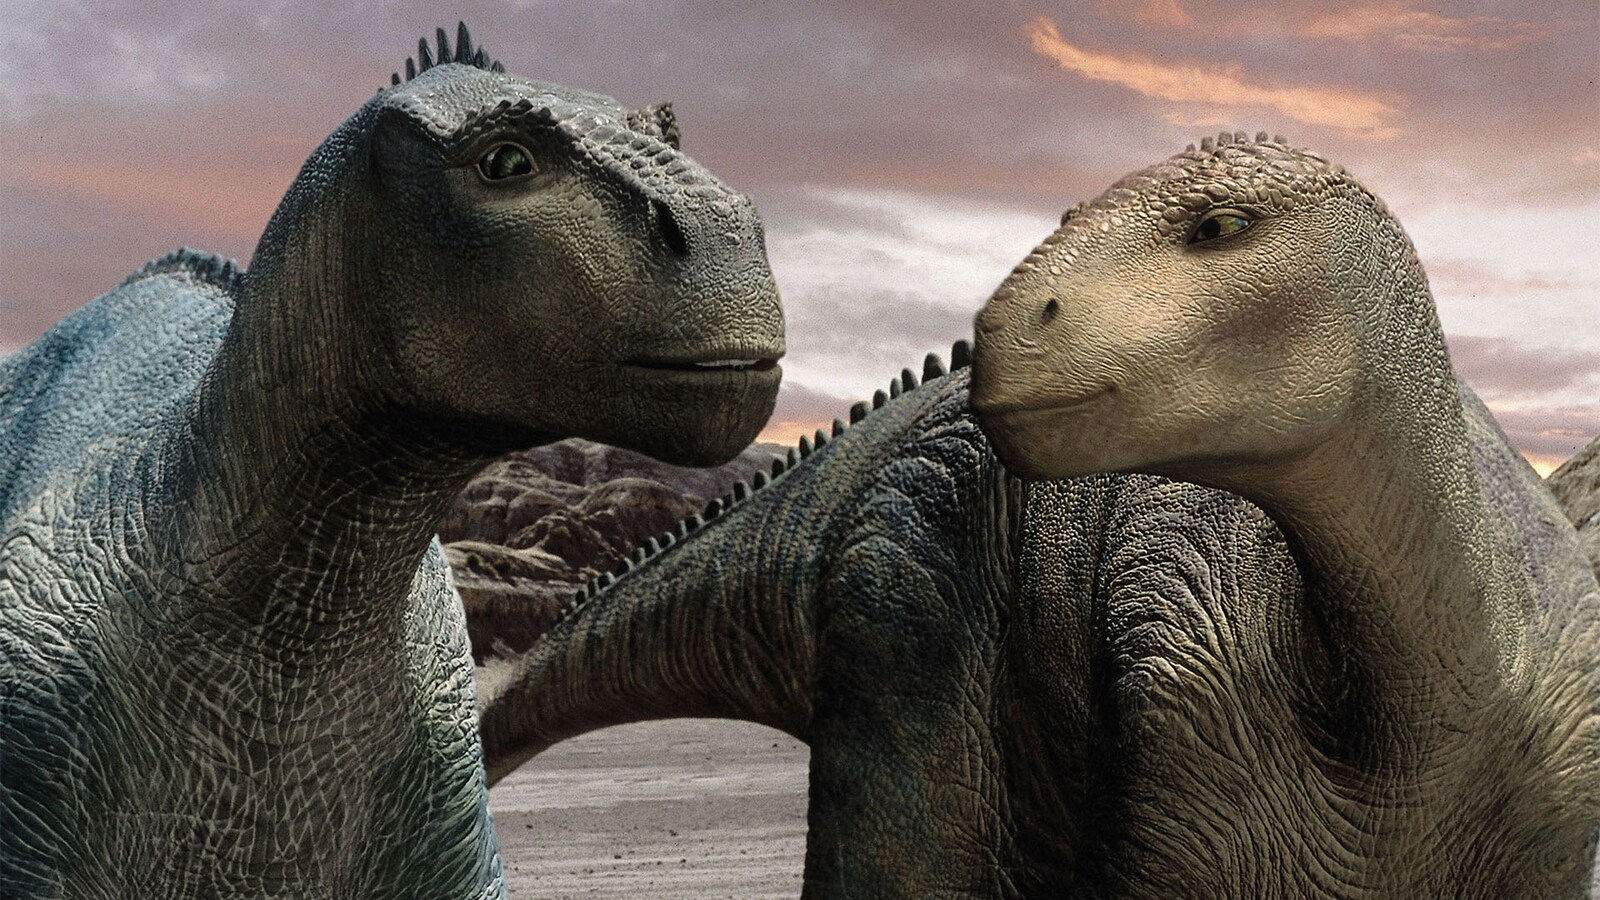 dinosaurerne-2000